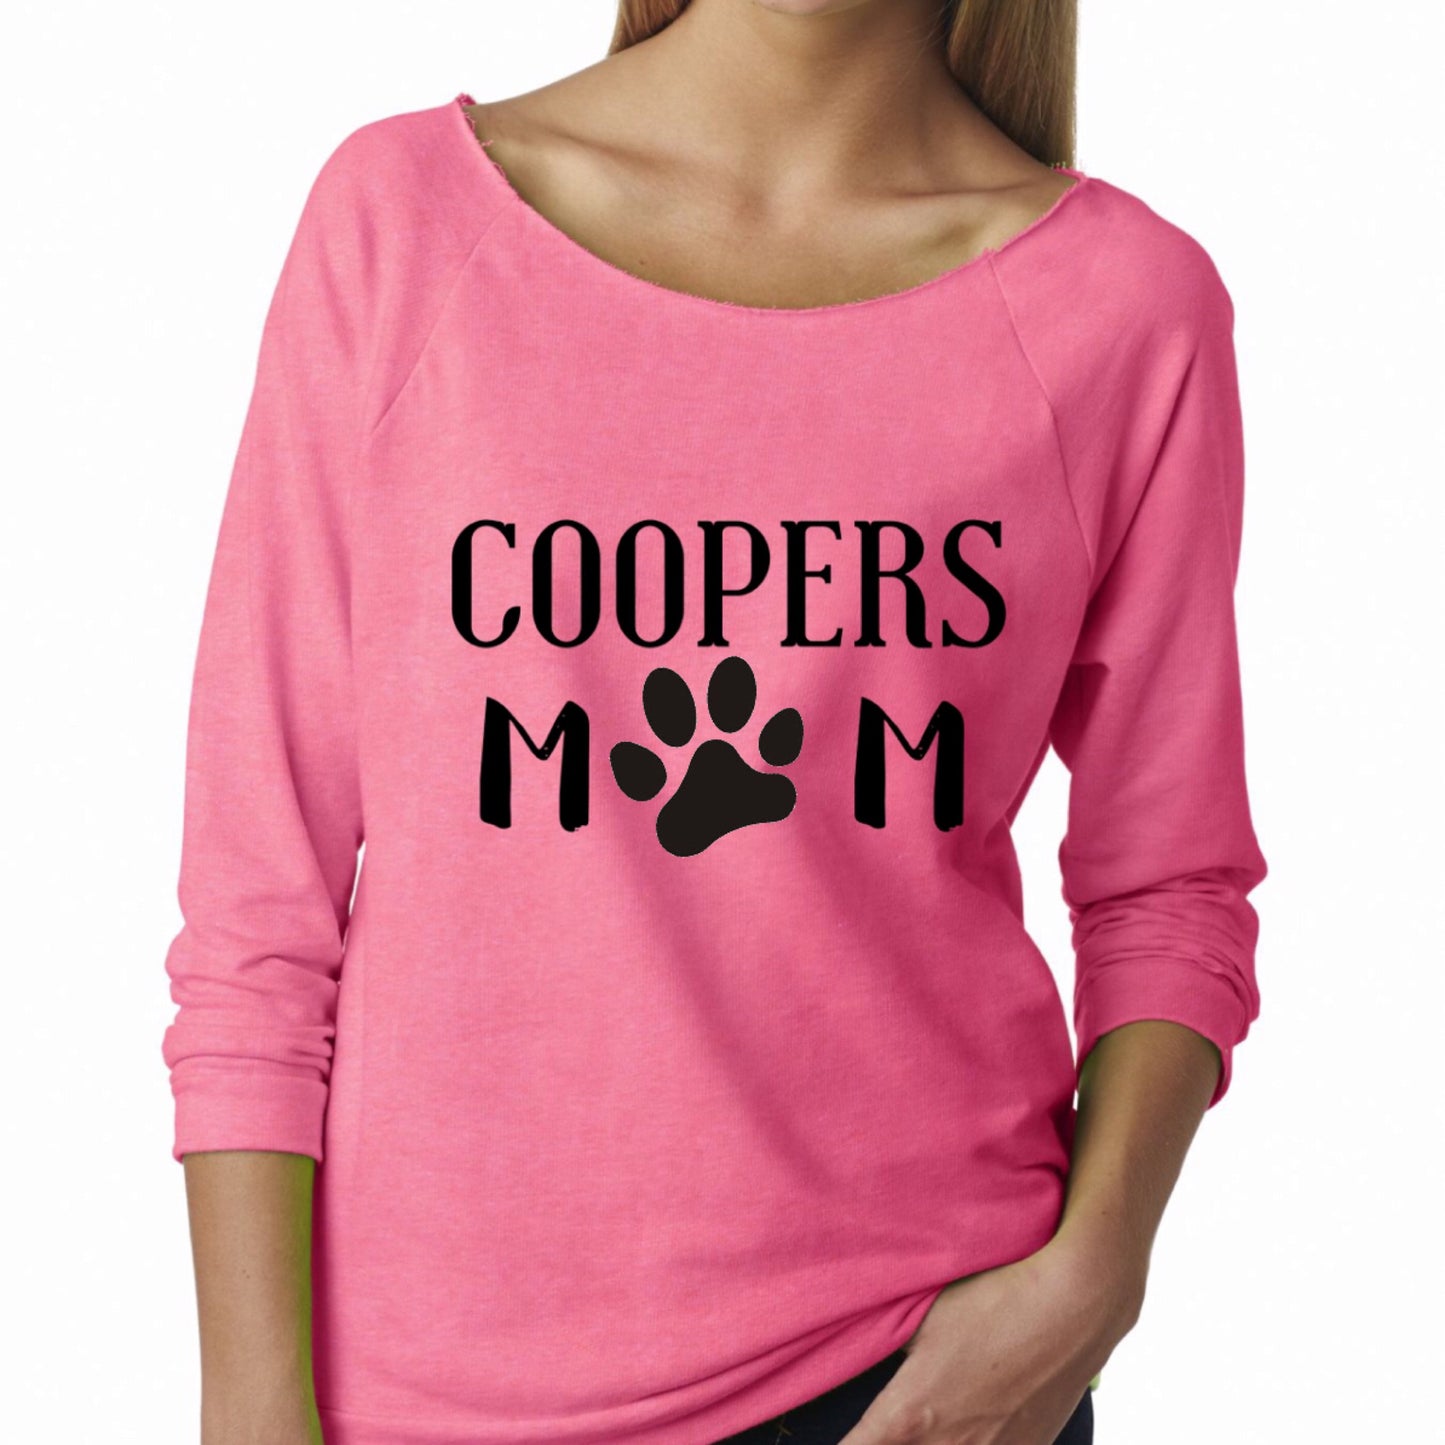 Fur mama shirt| Dog mom shirt| Dog lover shirt| Dog lover gift| Gift for her| Gift for Dog mom| Dogs before dudes t-shirt| Dog mama